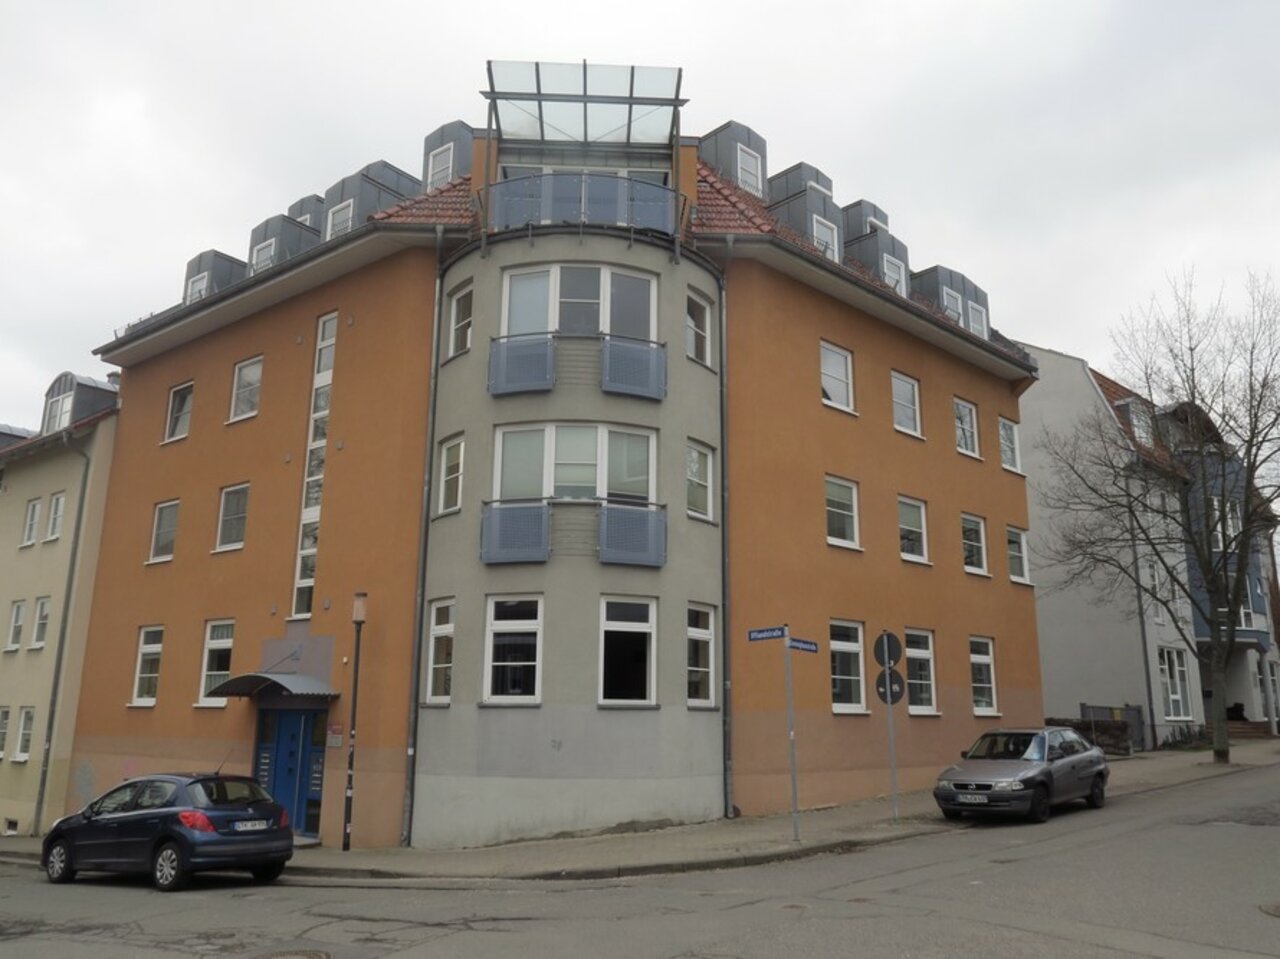 Attraktives Büro in ruhiger Lage unweit des Stadtzentrums von Gotha-Straßenansicht